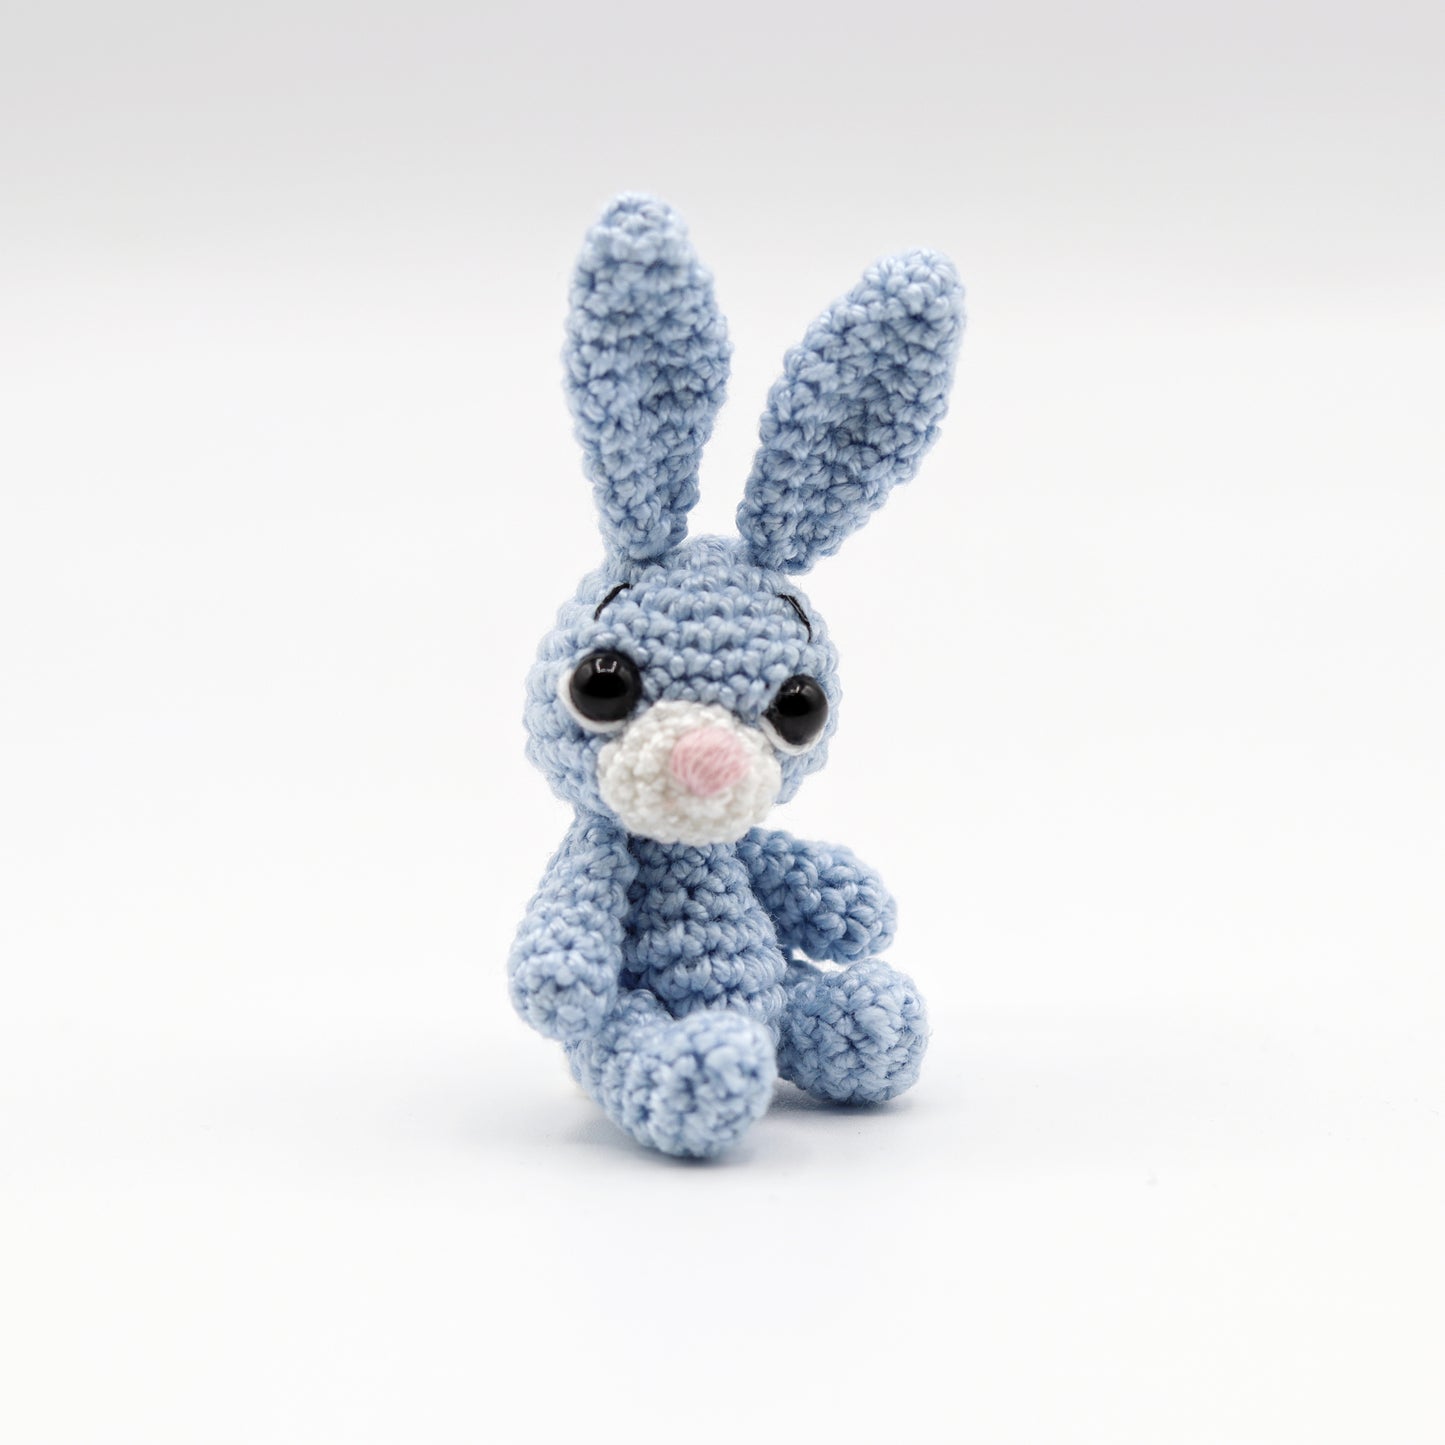 Handmade crochet tiny rabbit toy